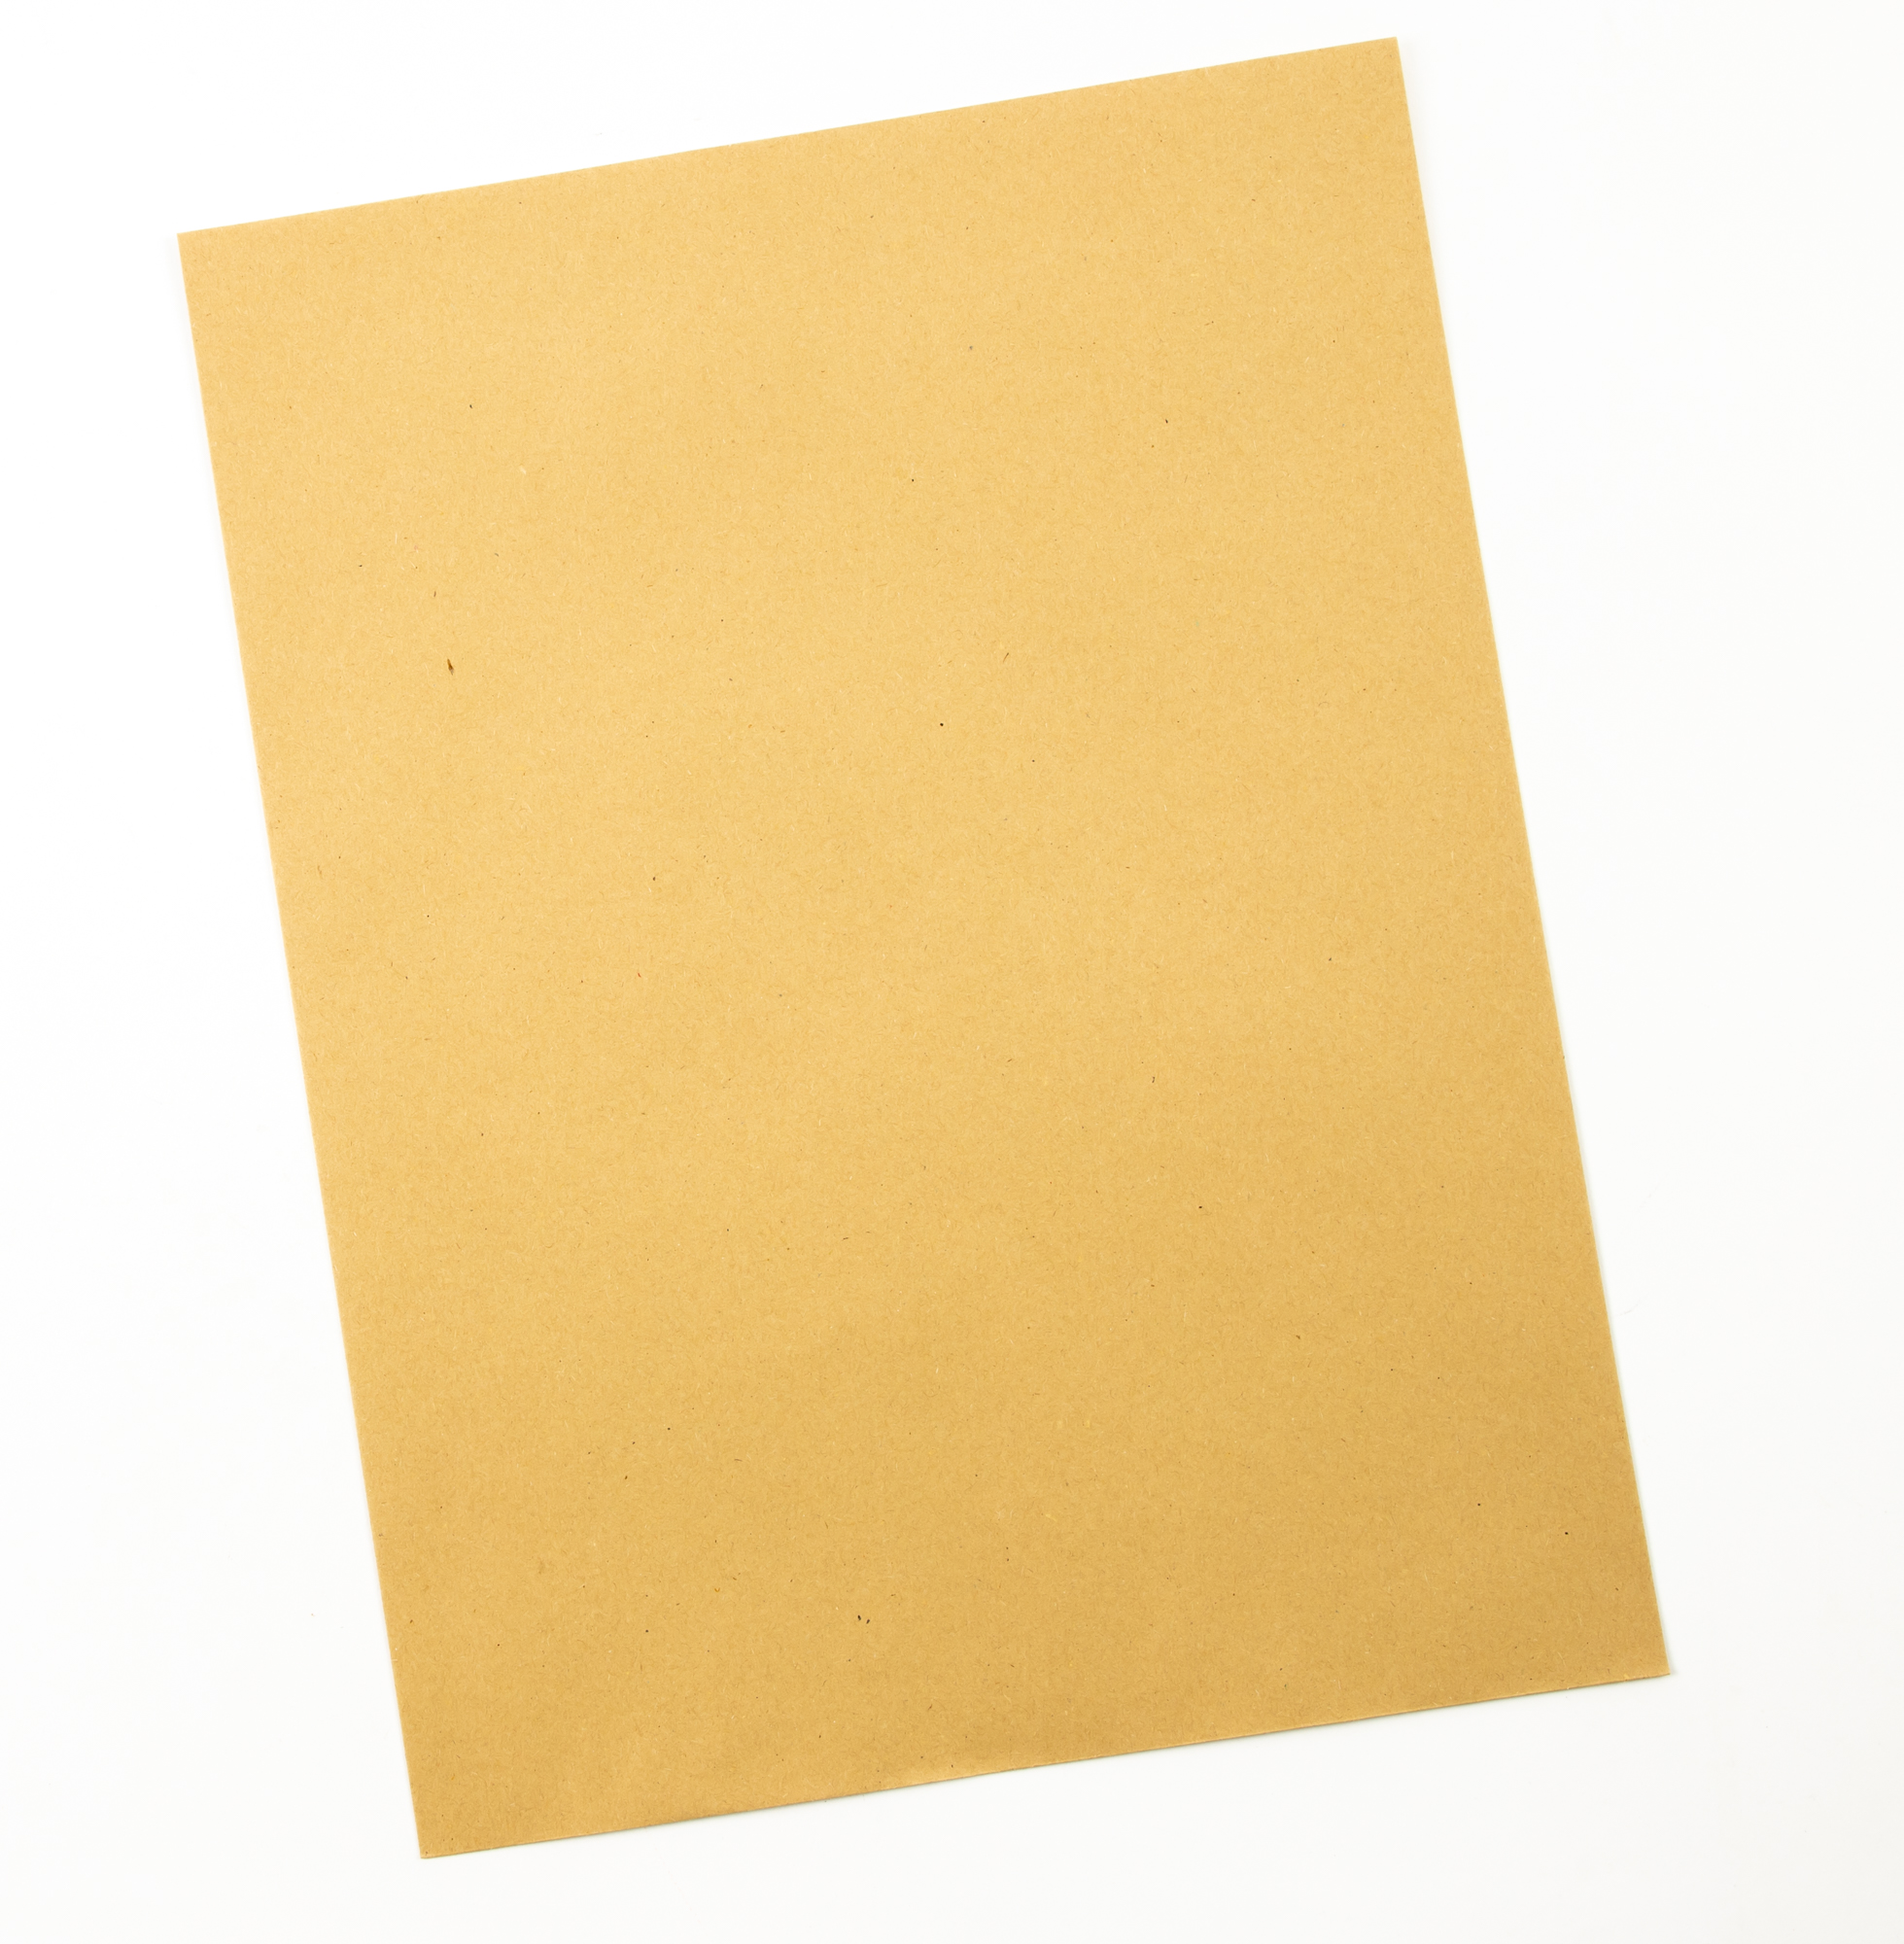 Envelope Manilla Gummed Plain 406x305mm